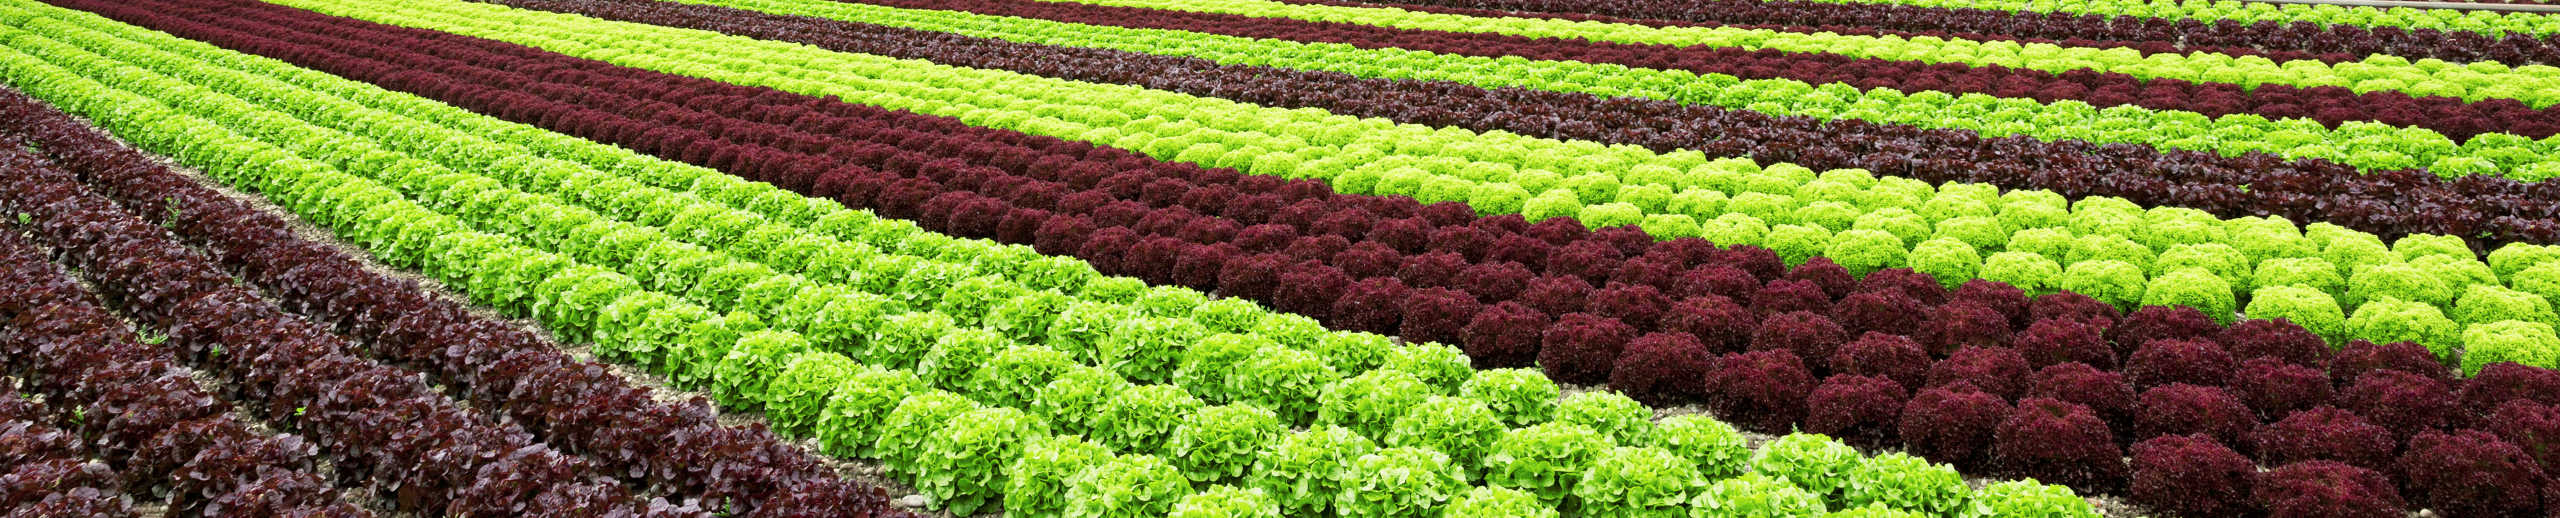 Große Salatfeld mit roten und grünen Salatköpfen